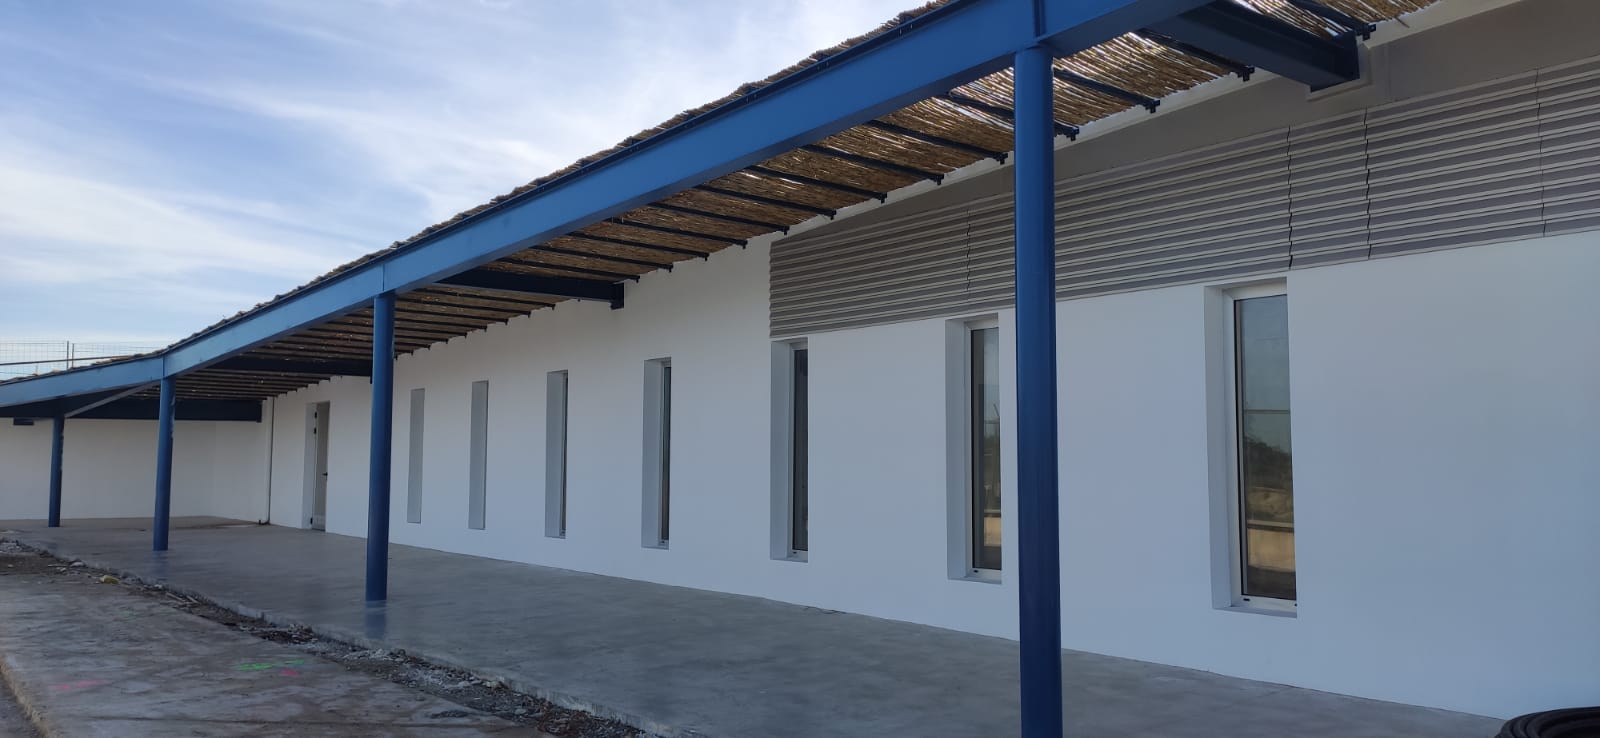 El port de la Savina compta amb un nou edifici per a la confraria de pescadors de Formentera